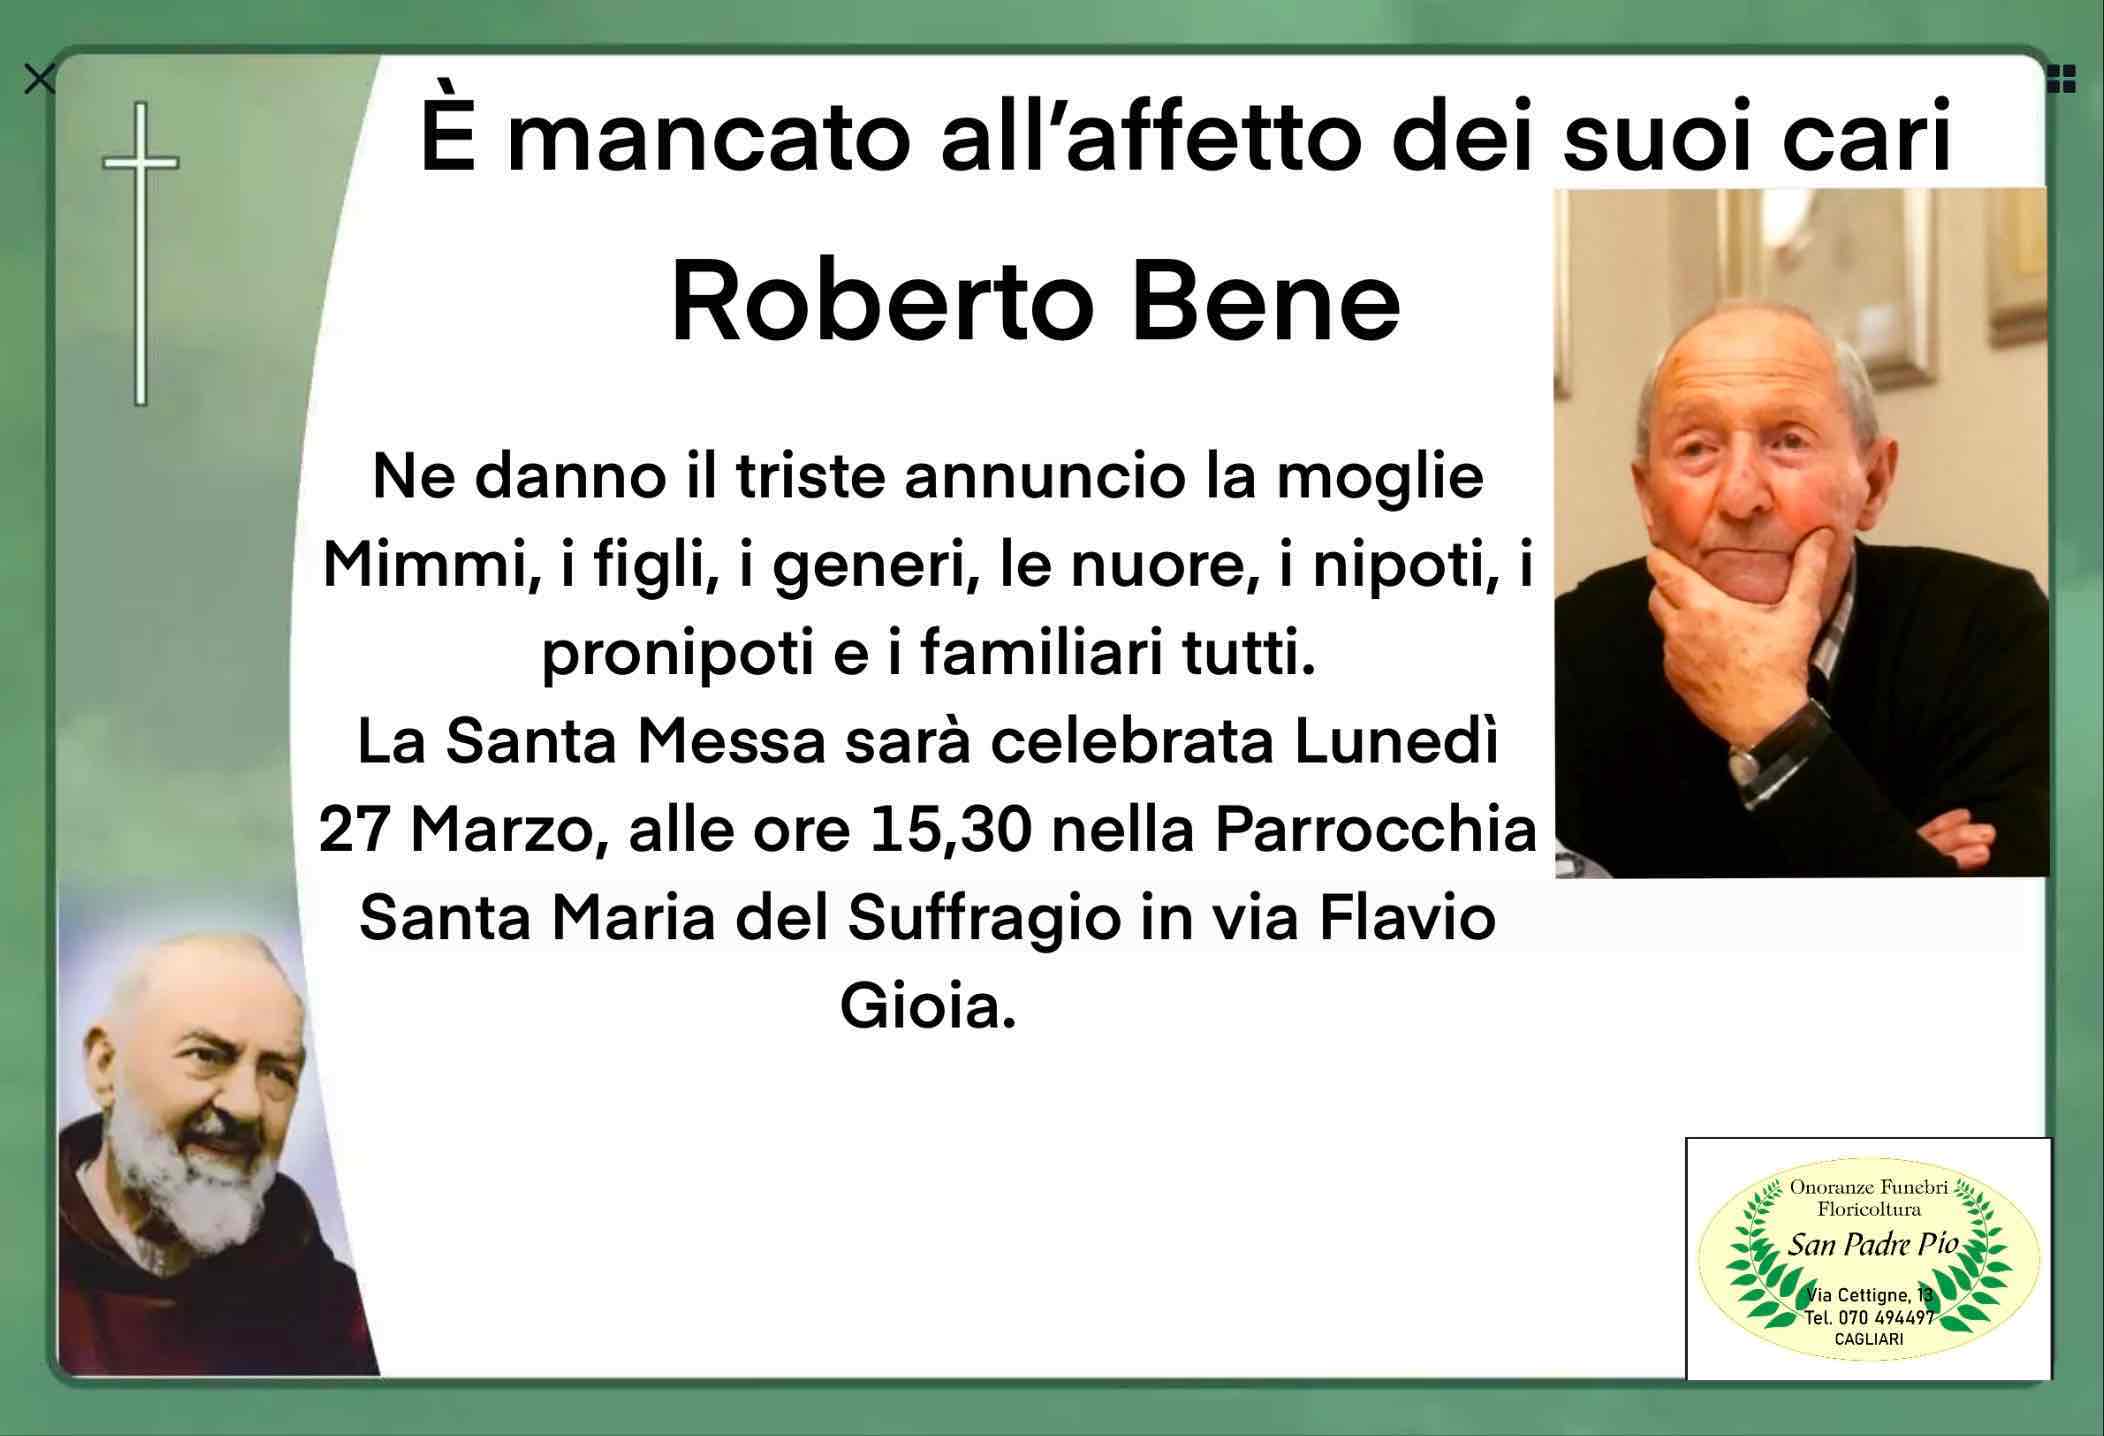 Roberto Bene